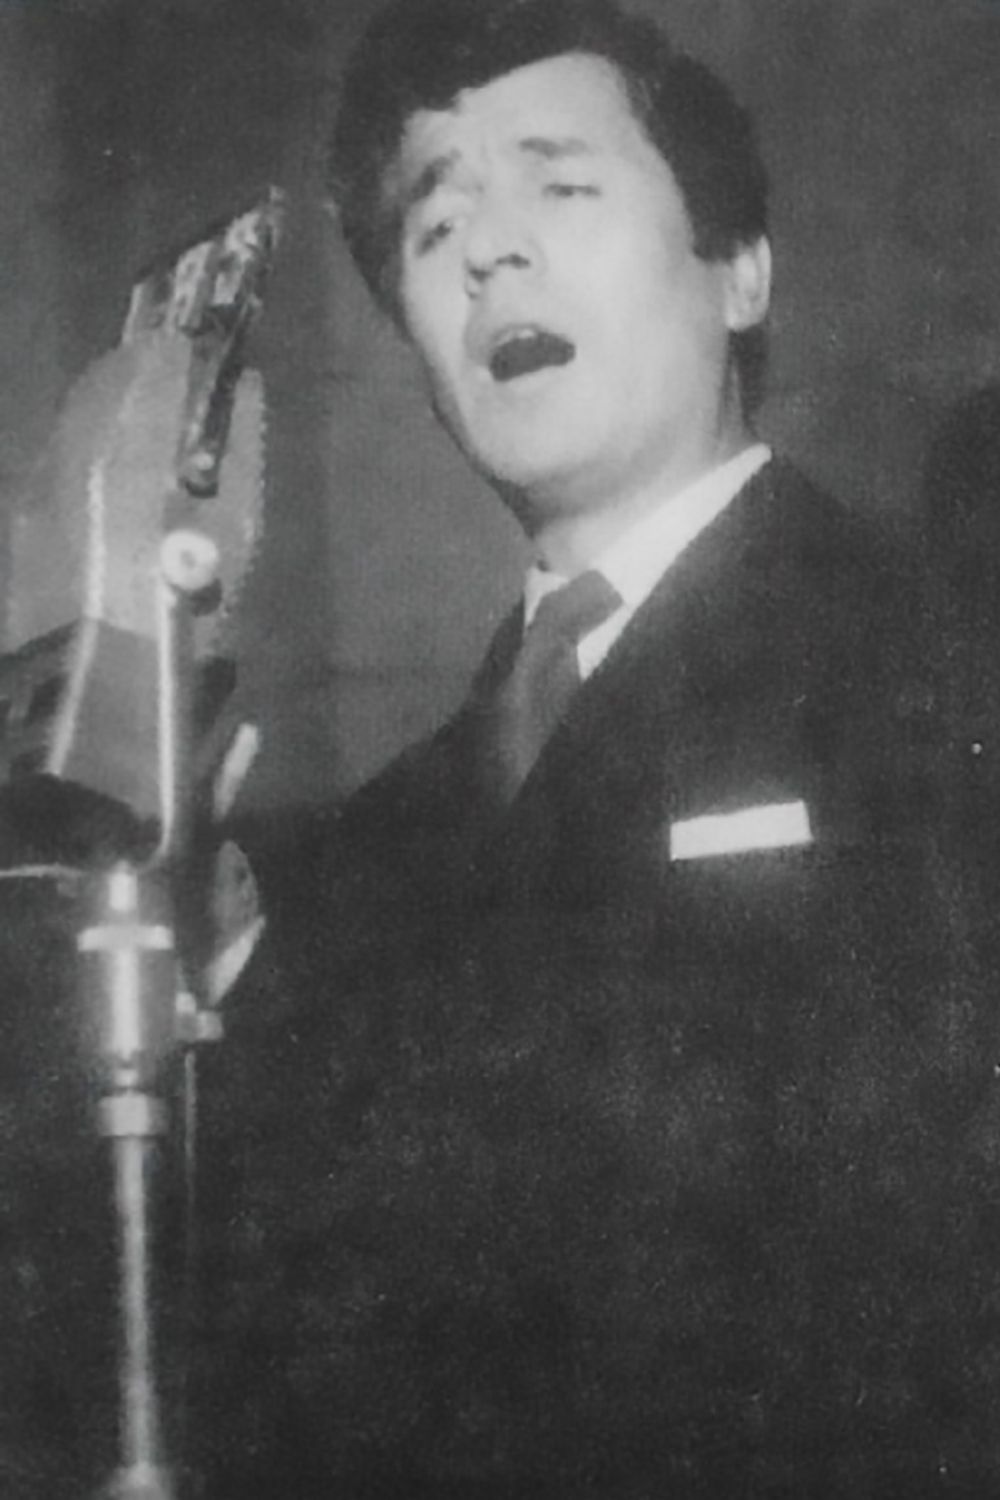 Raúl Berón singing.